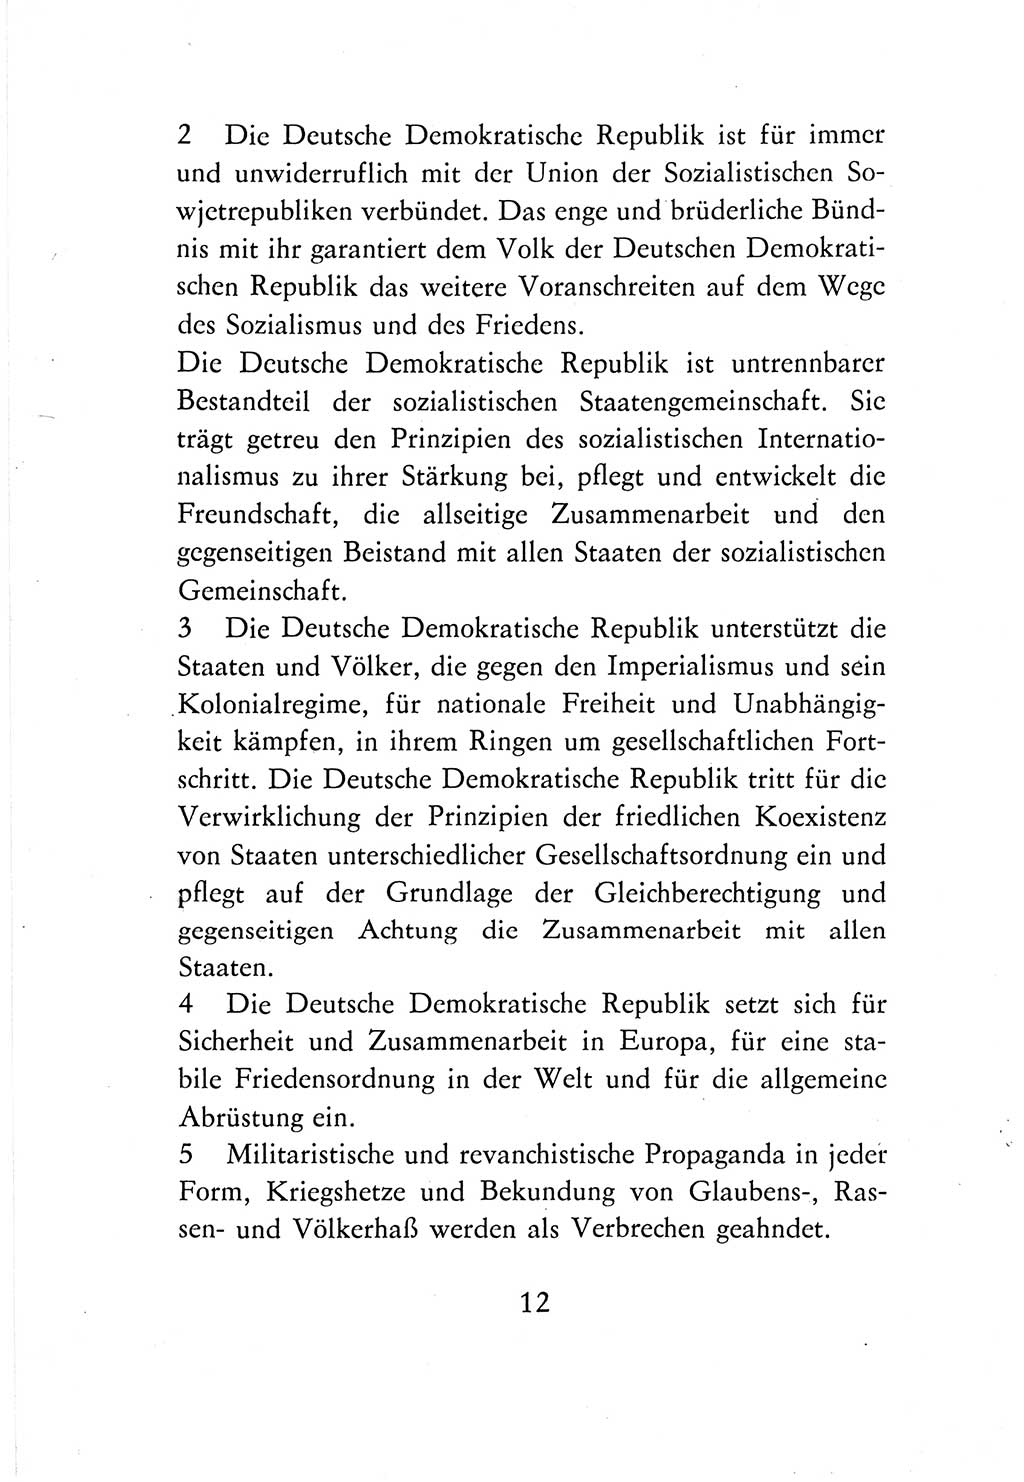 Verfassung der Deutschen Demokratischen Republik (DDR) vom 7. Oktober 1974, Seite 12 (Verf. DDR 1974, S. 12)